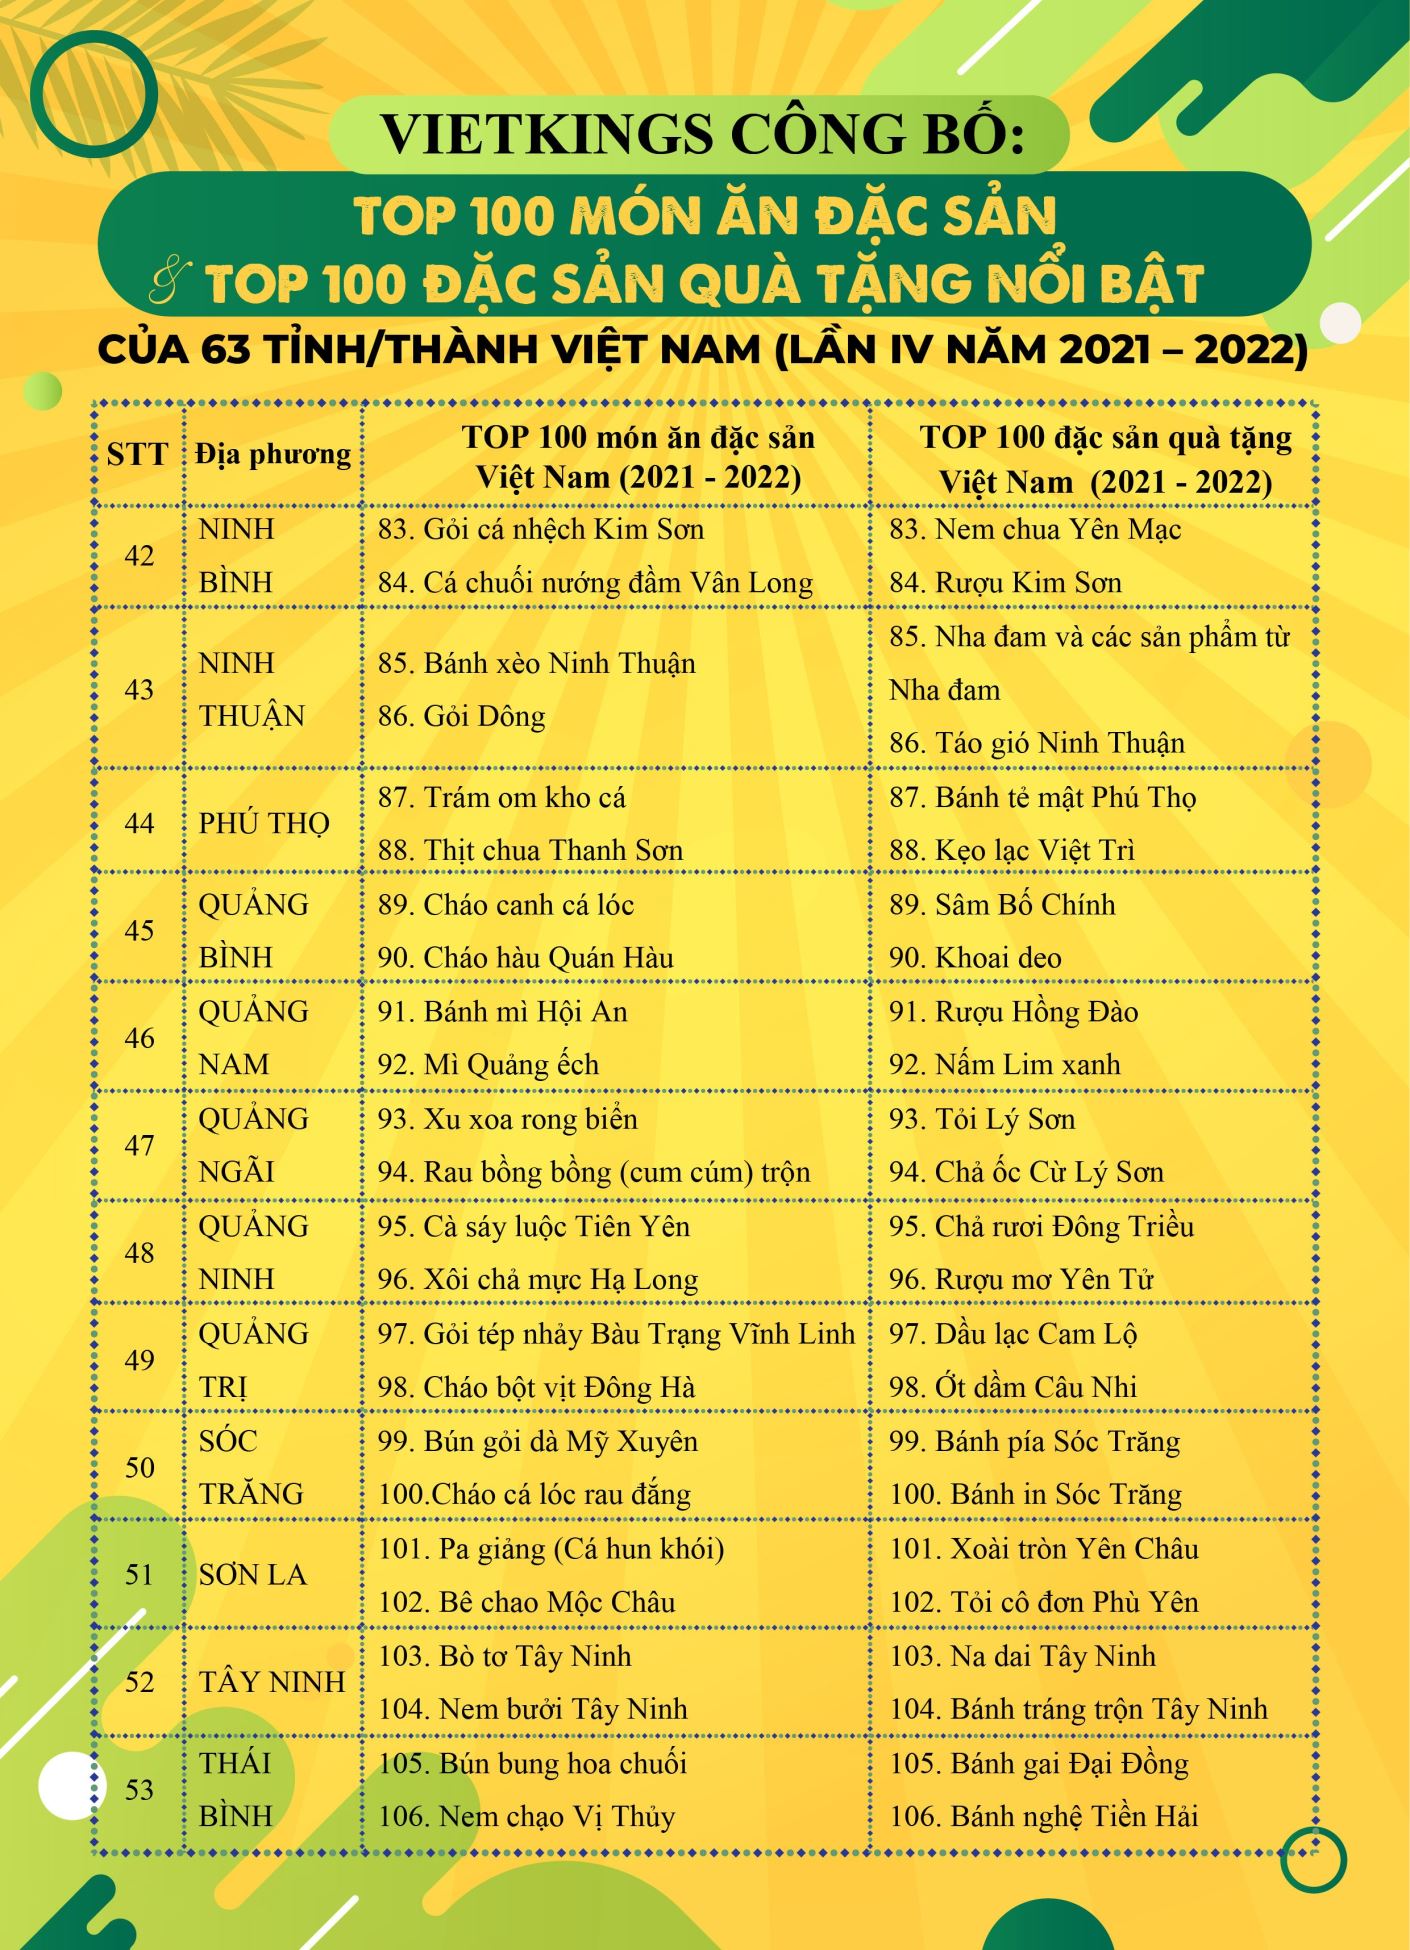 Bánh mì Sài Gòn, gỏi sầu đâu, lẩu mắm U Minh vào top 100 món ăn Việt đặc sản-6